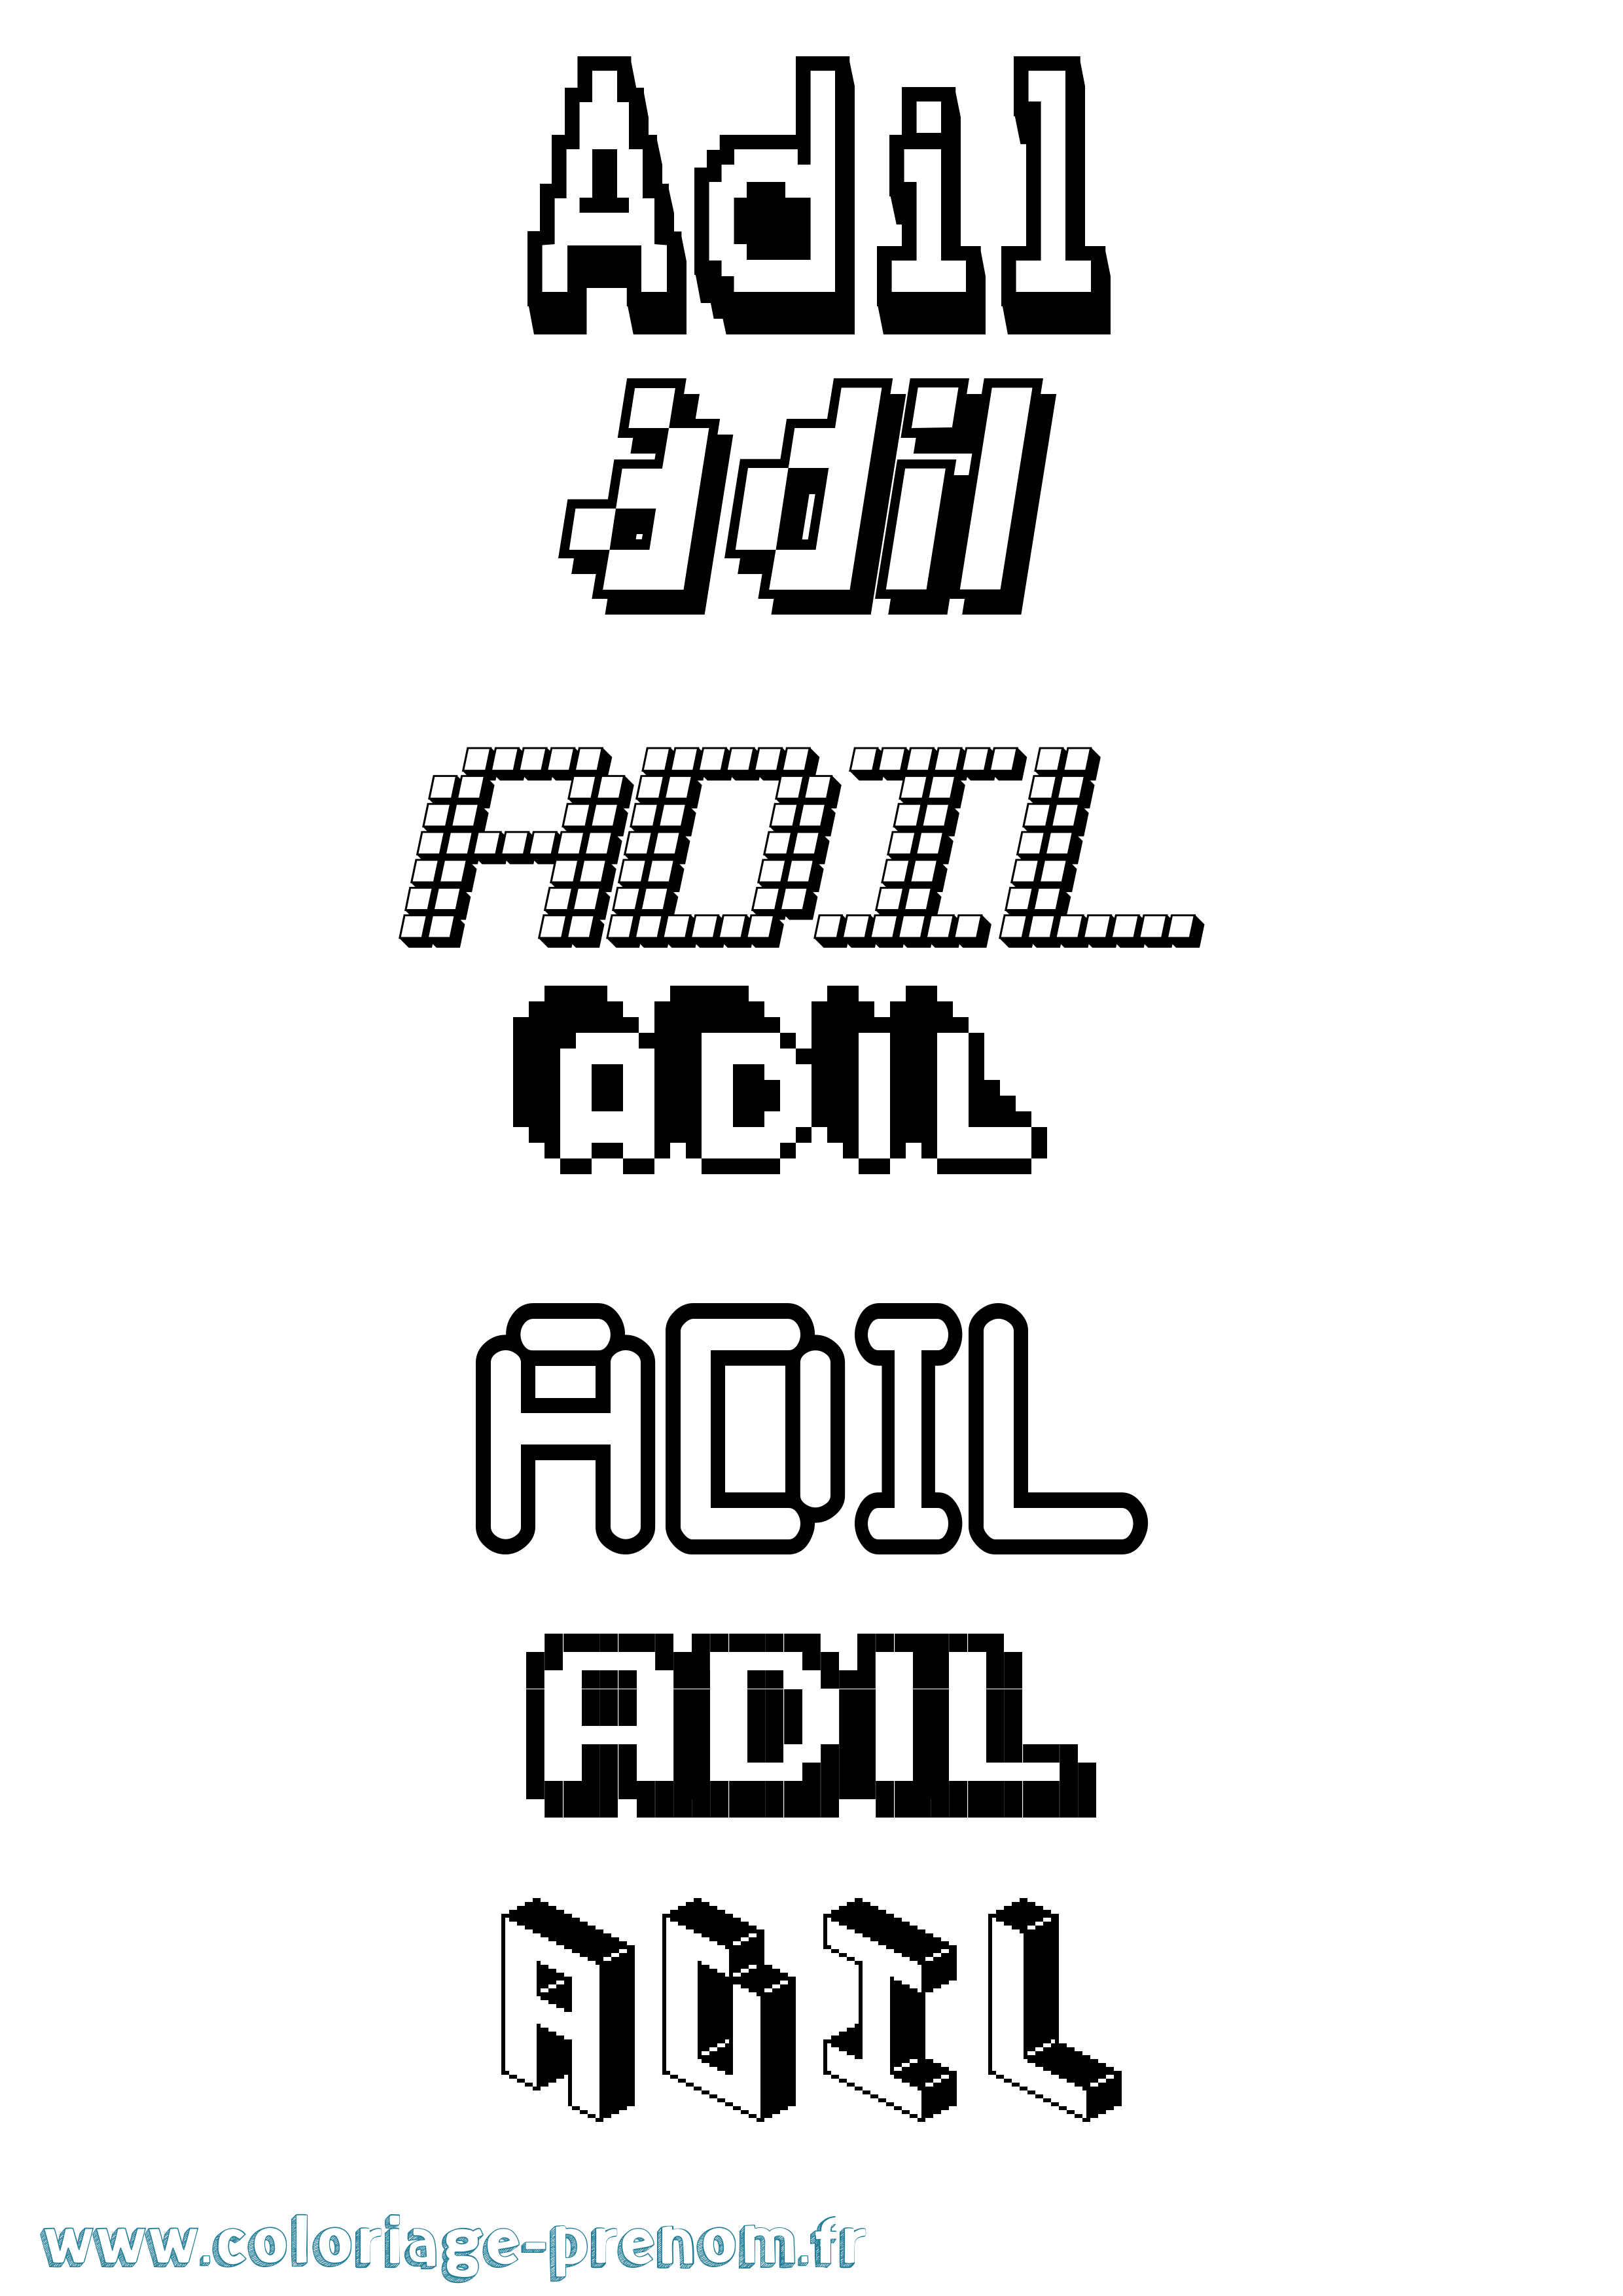 Coloriage prénom Adil Pixel